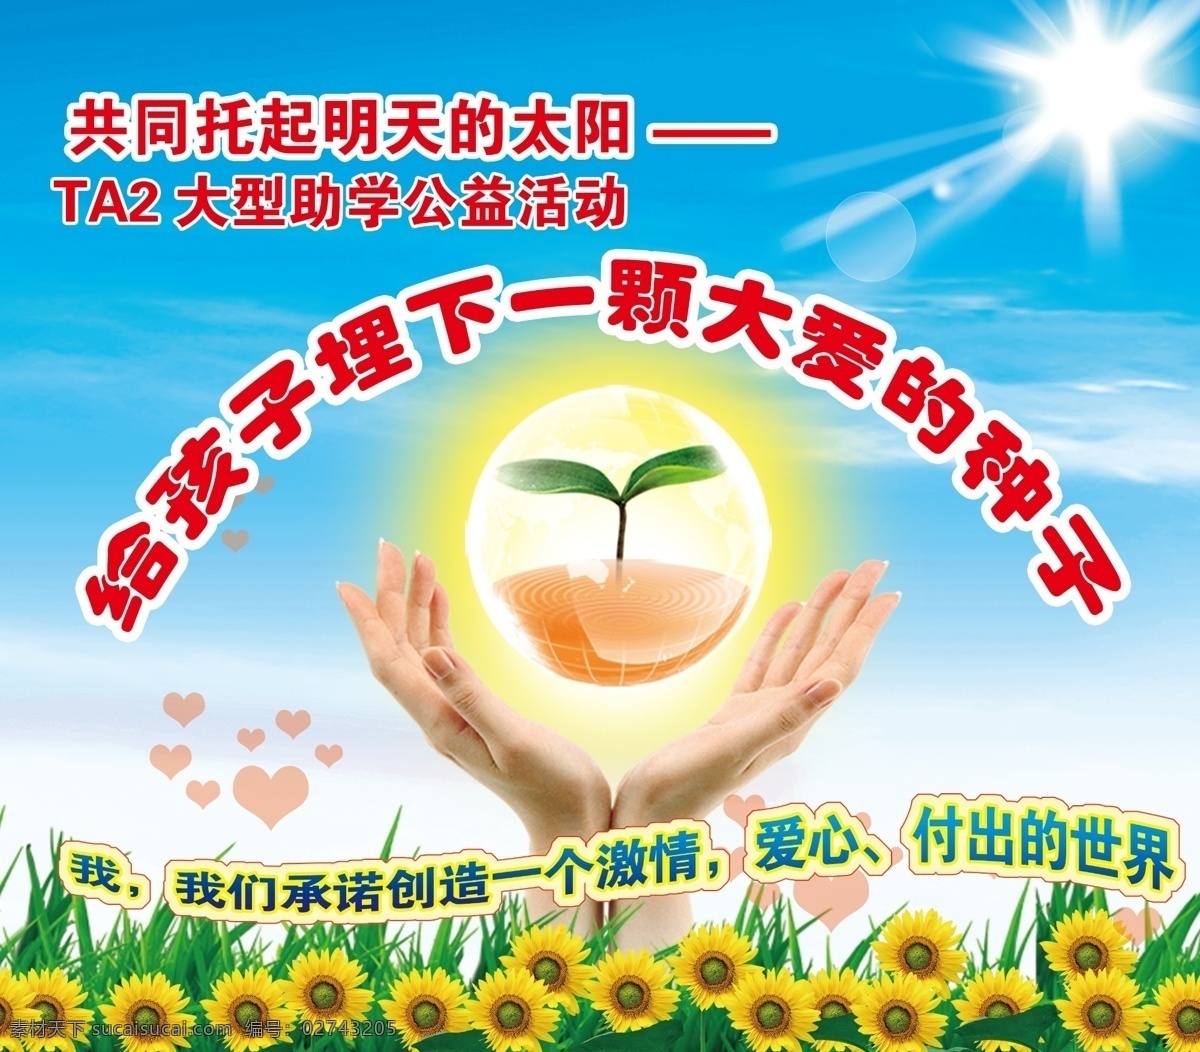 公益活动 宣传海报 大爱的种子 手捧 种子 爱心 向日葵 共托活动 共托 太阳 广告设计模板 源文件